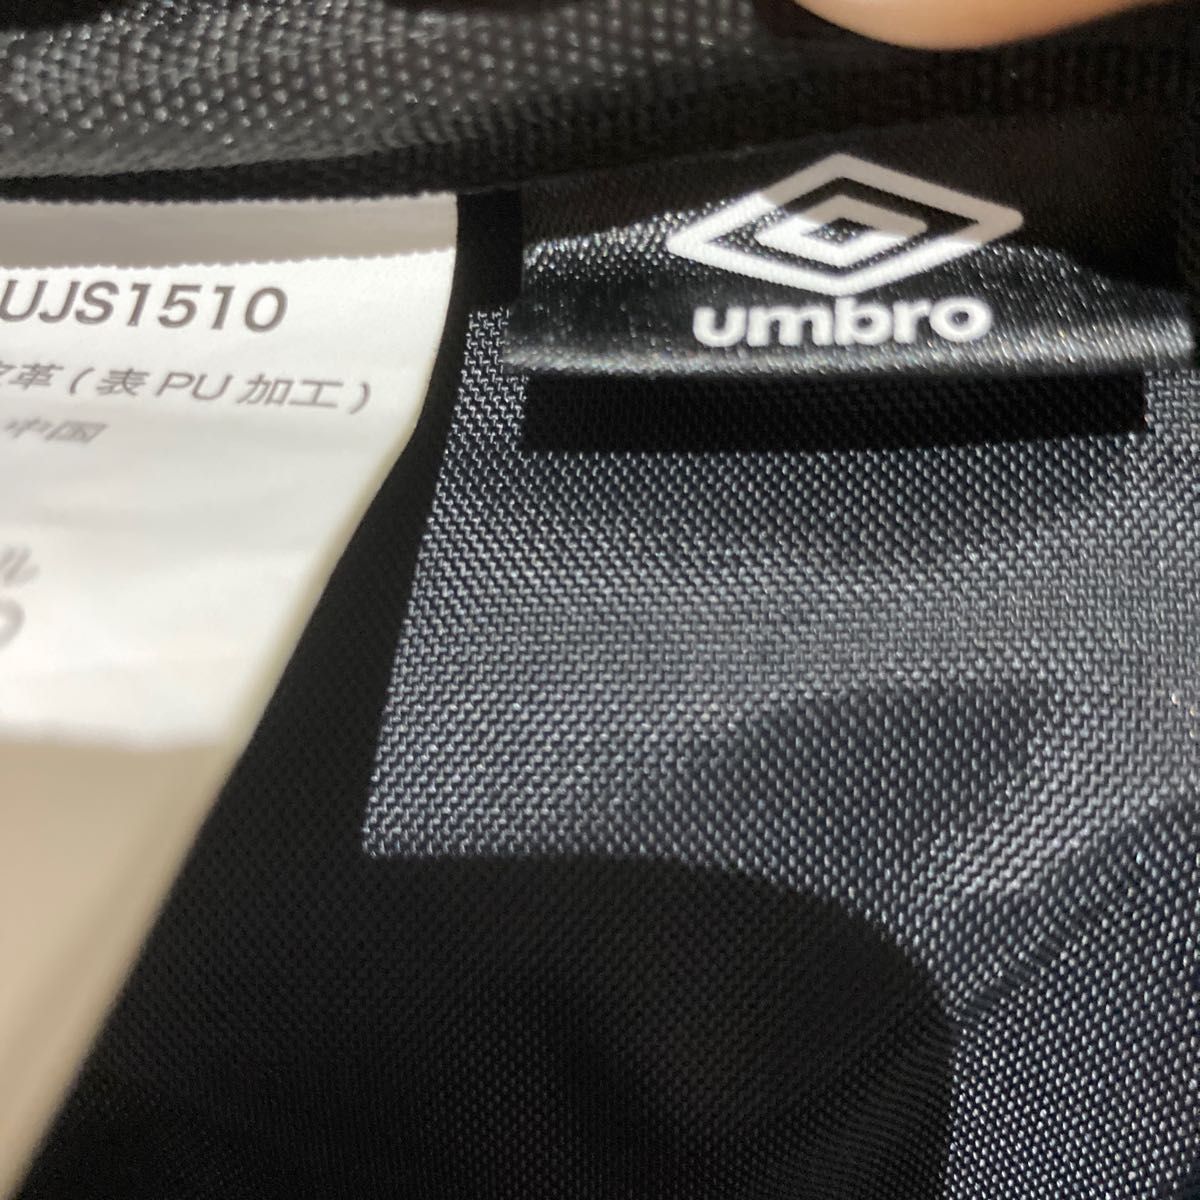 UMBRO エナメルサッカーバッグ